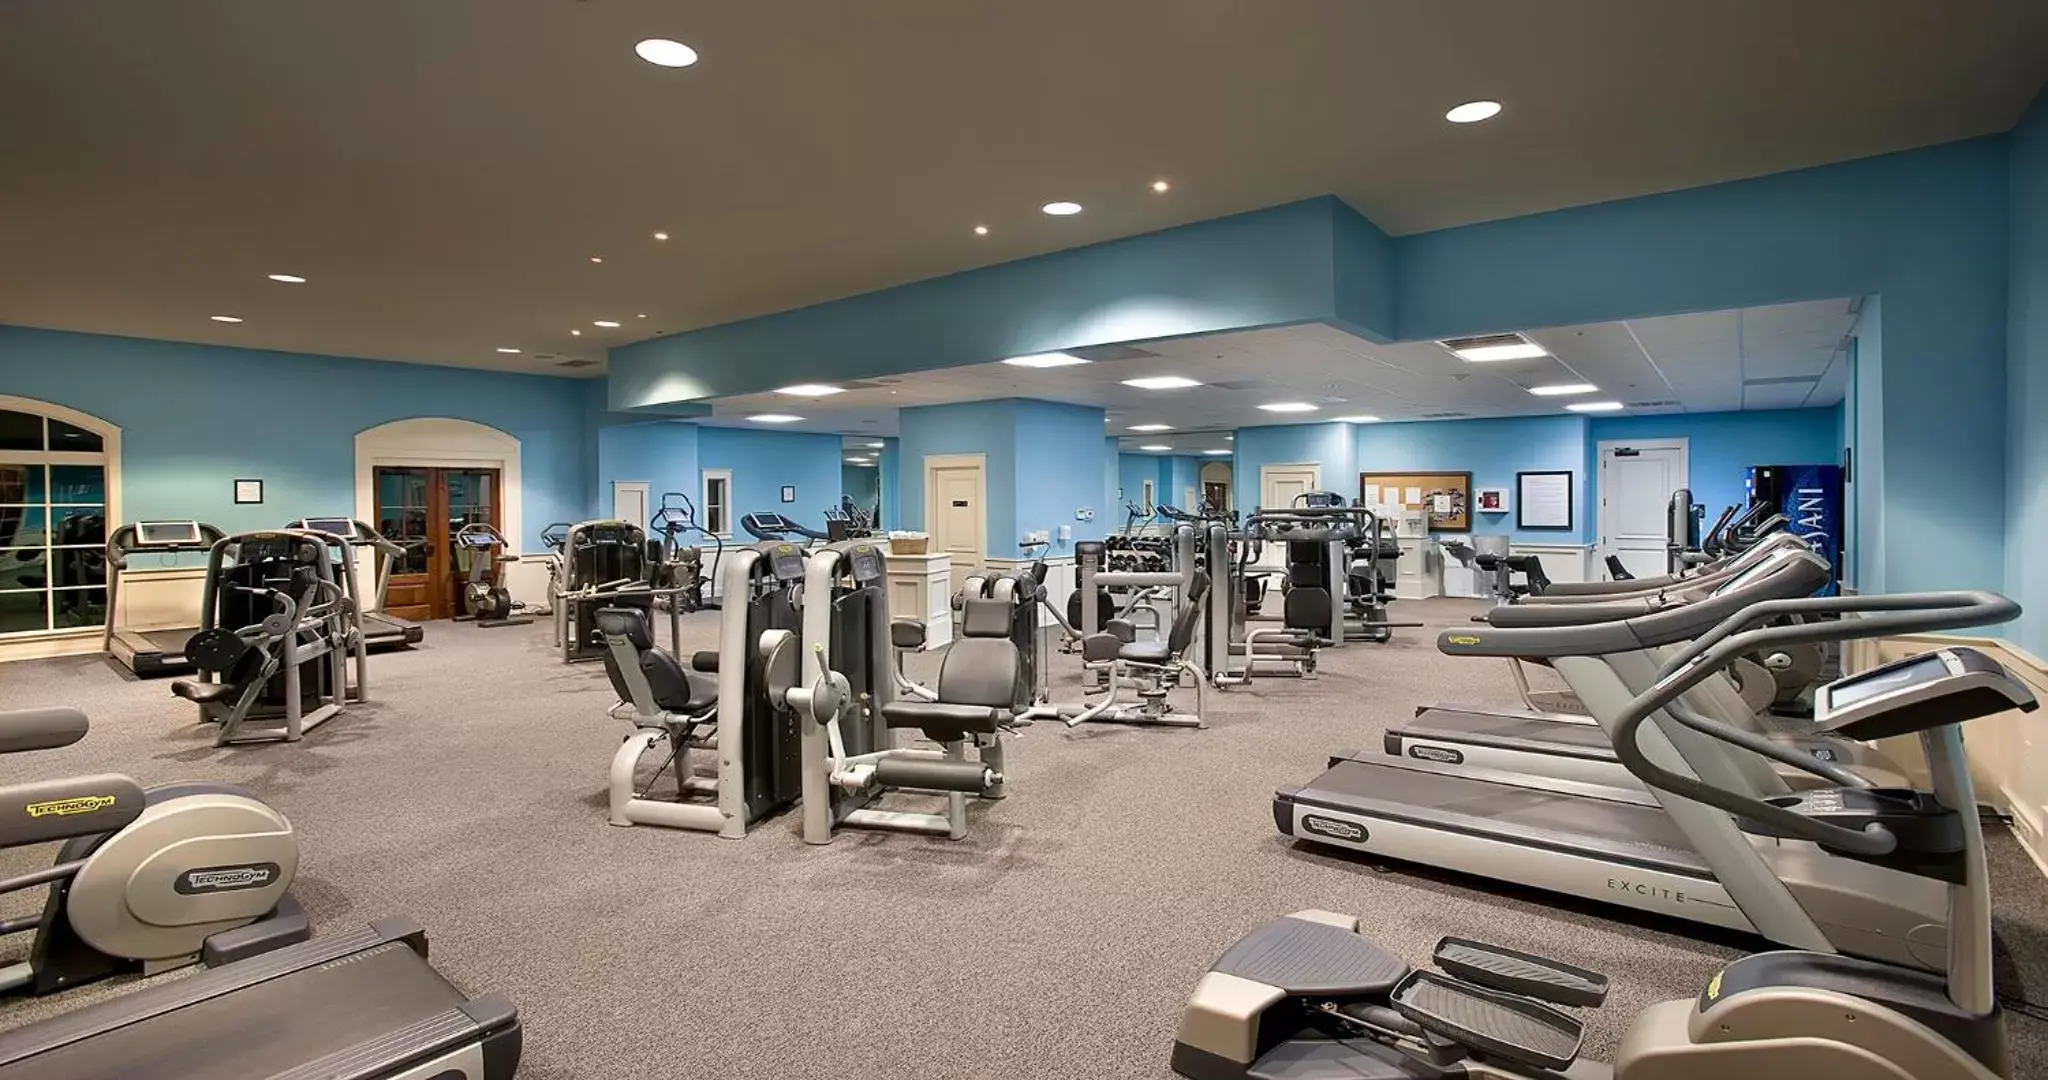 Fitness centre/facilities, Fitness Center/Facilities in North Beach Resort & Villas